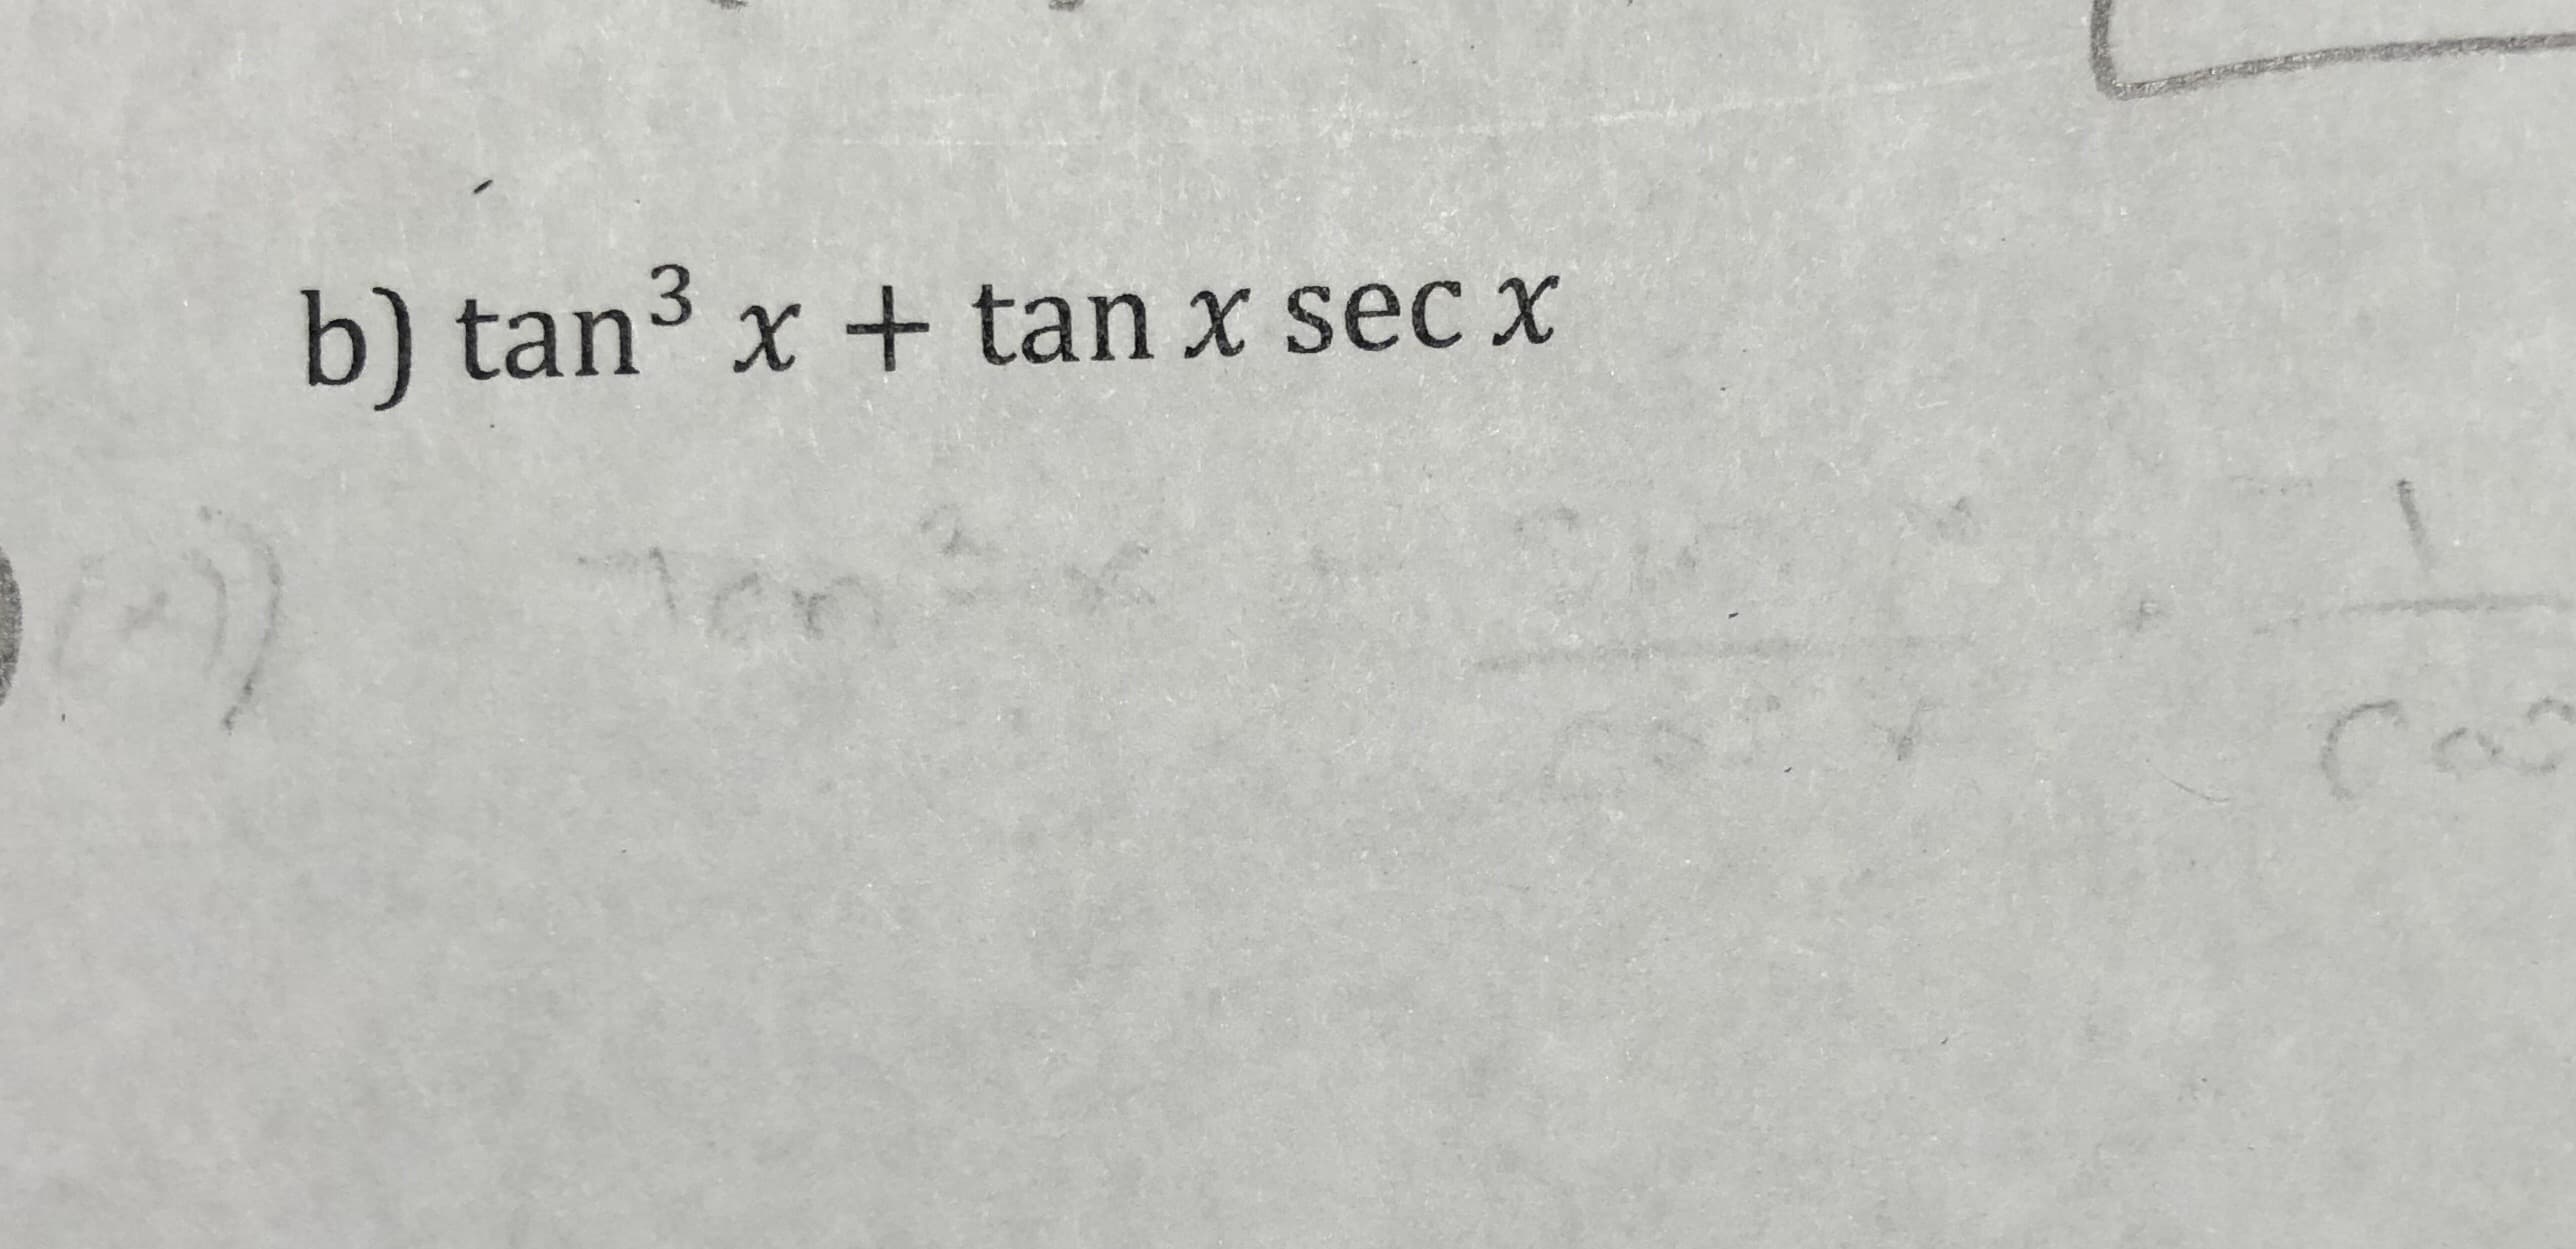 3.
b) tan x + tan x sec x
